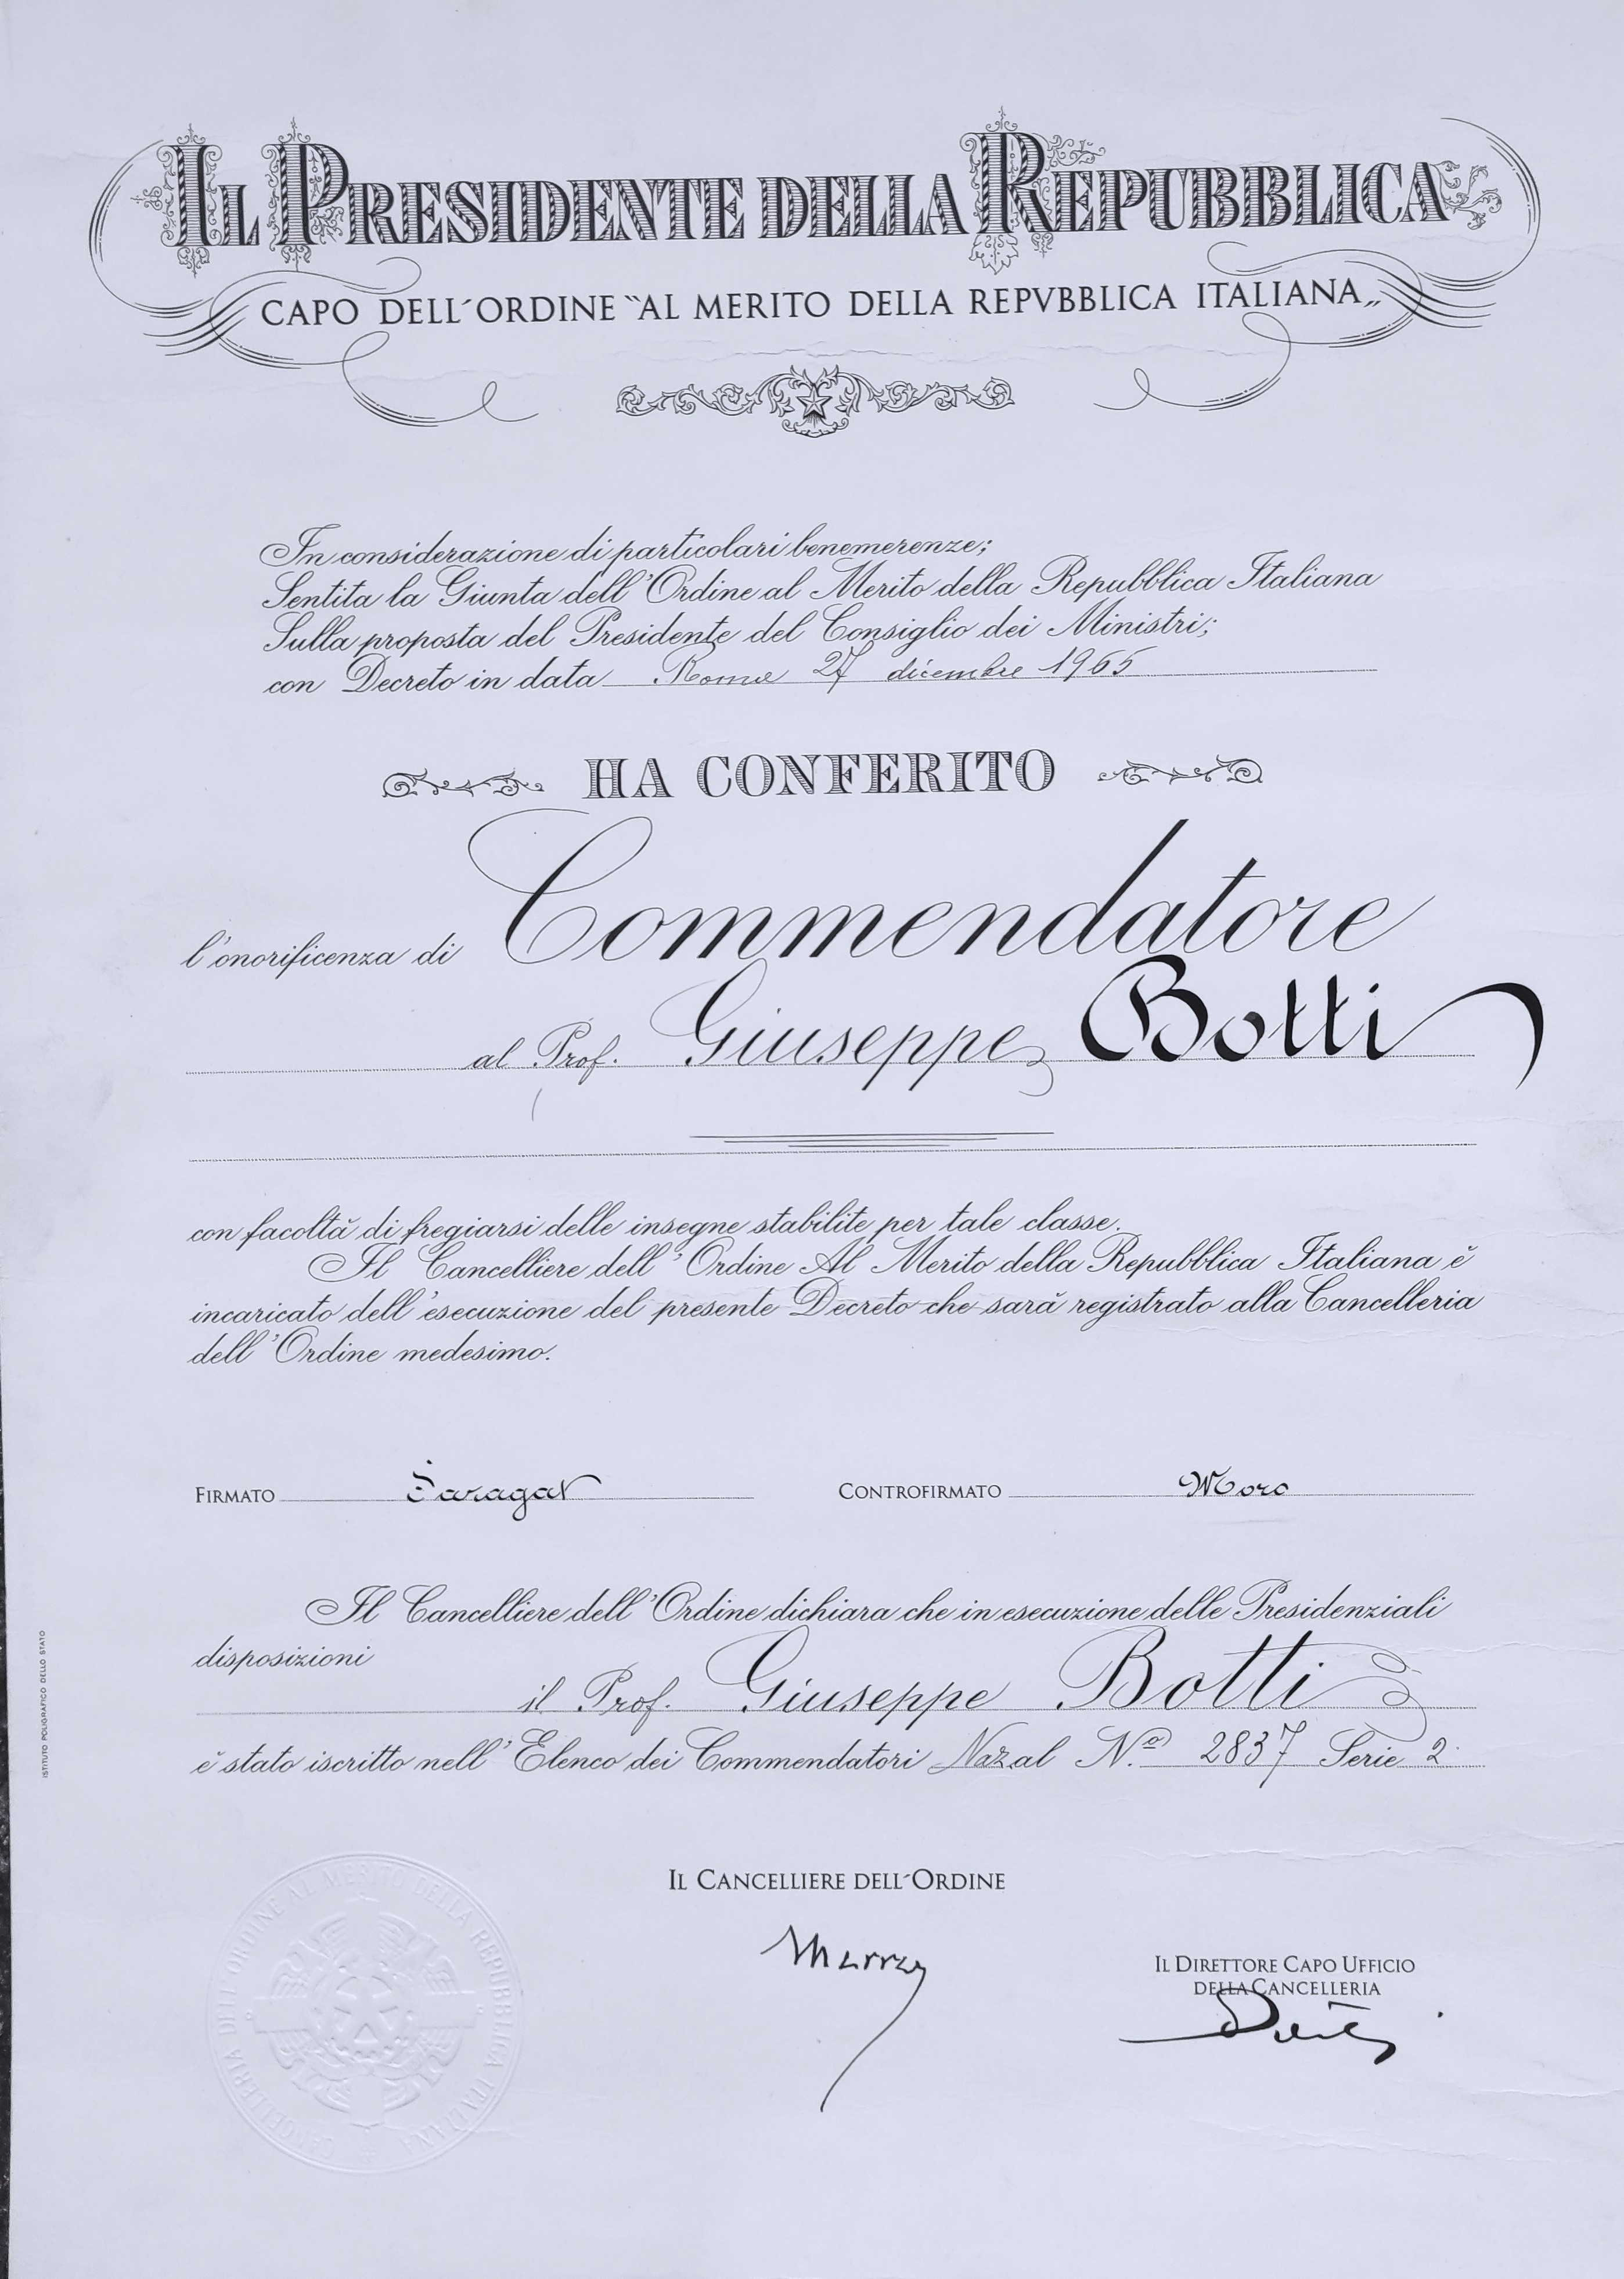 Diploma di Commendatore dell’Ordine al Merito della Repubblica Italiana, 1965. (ASTo, Archivio Giuseppe Botti, cartella 20).